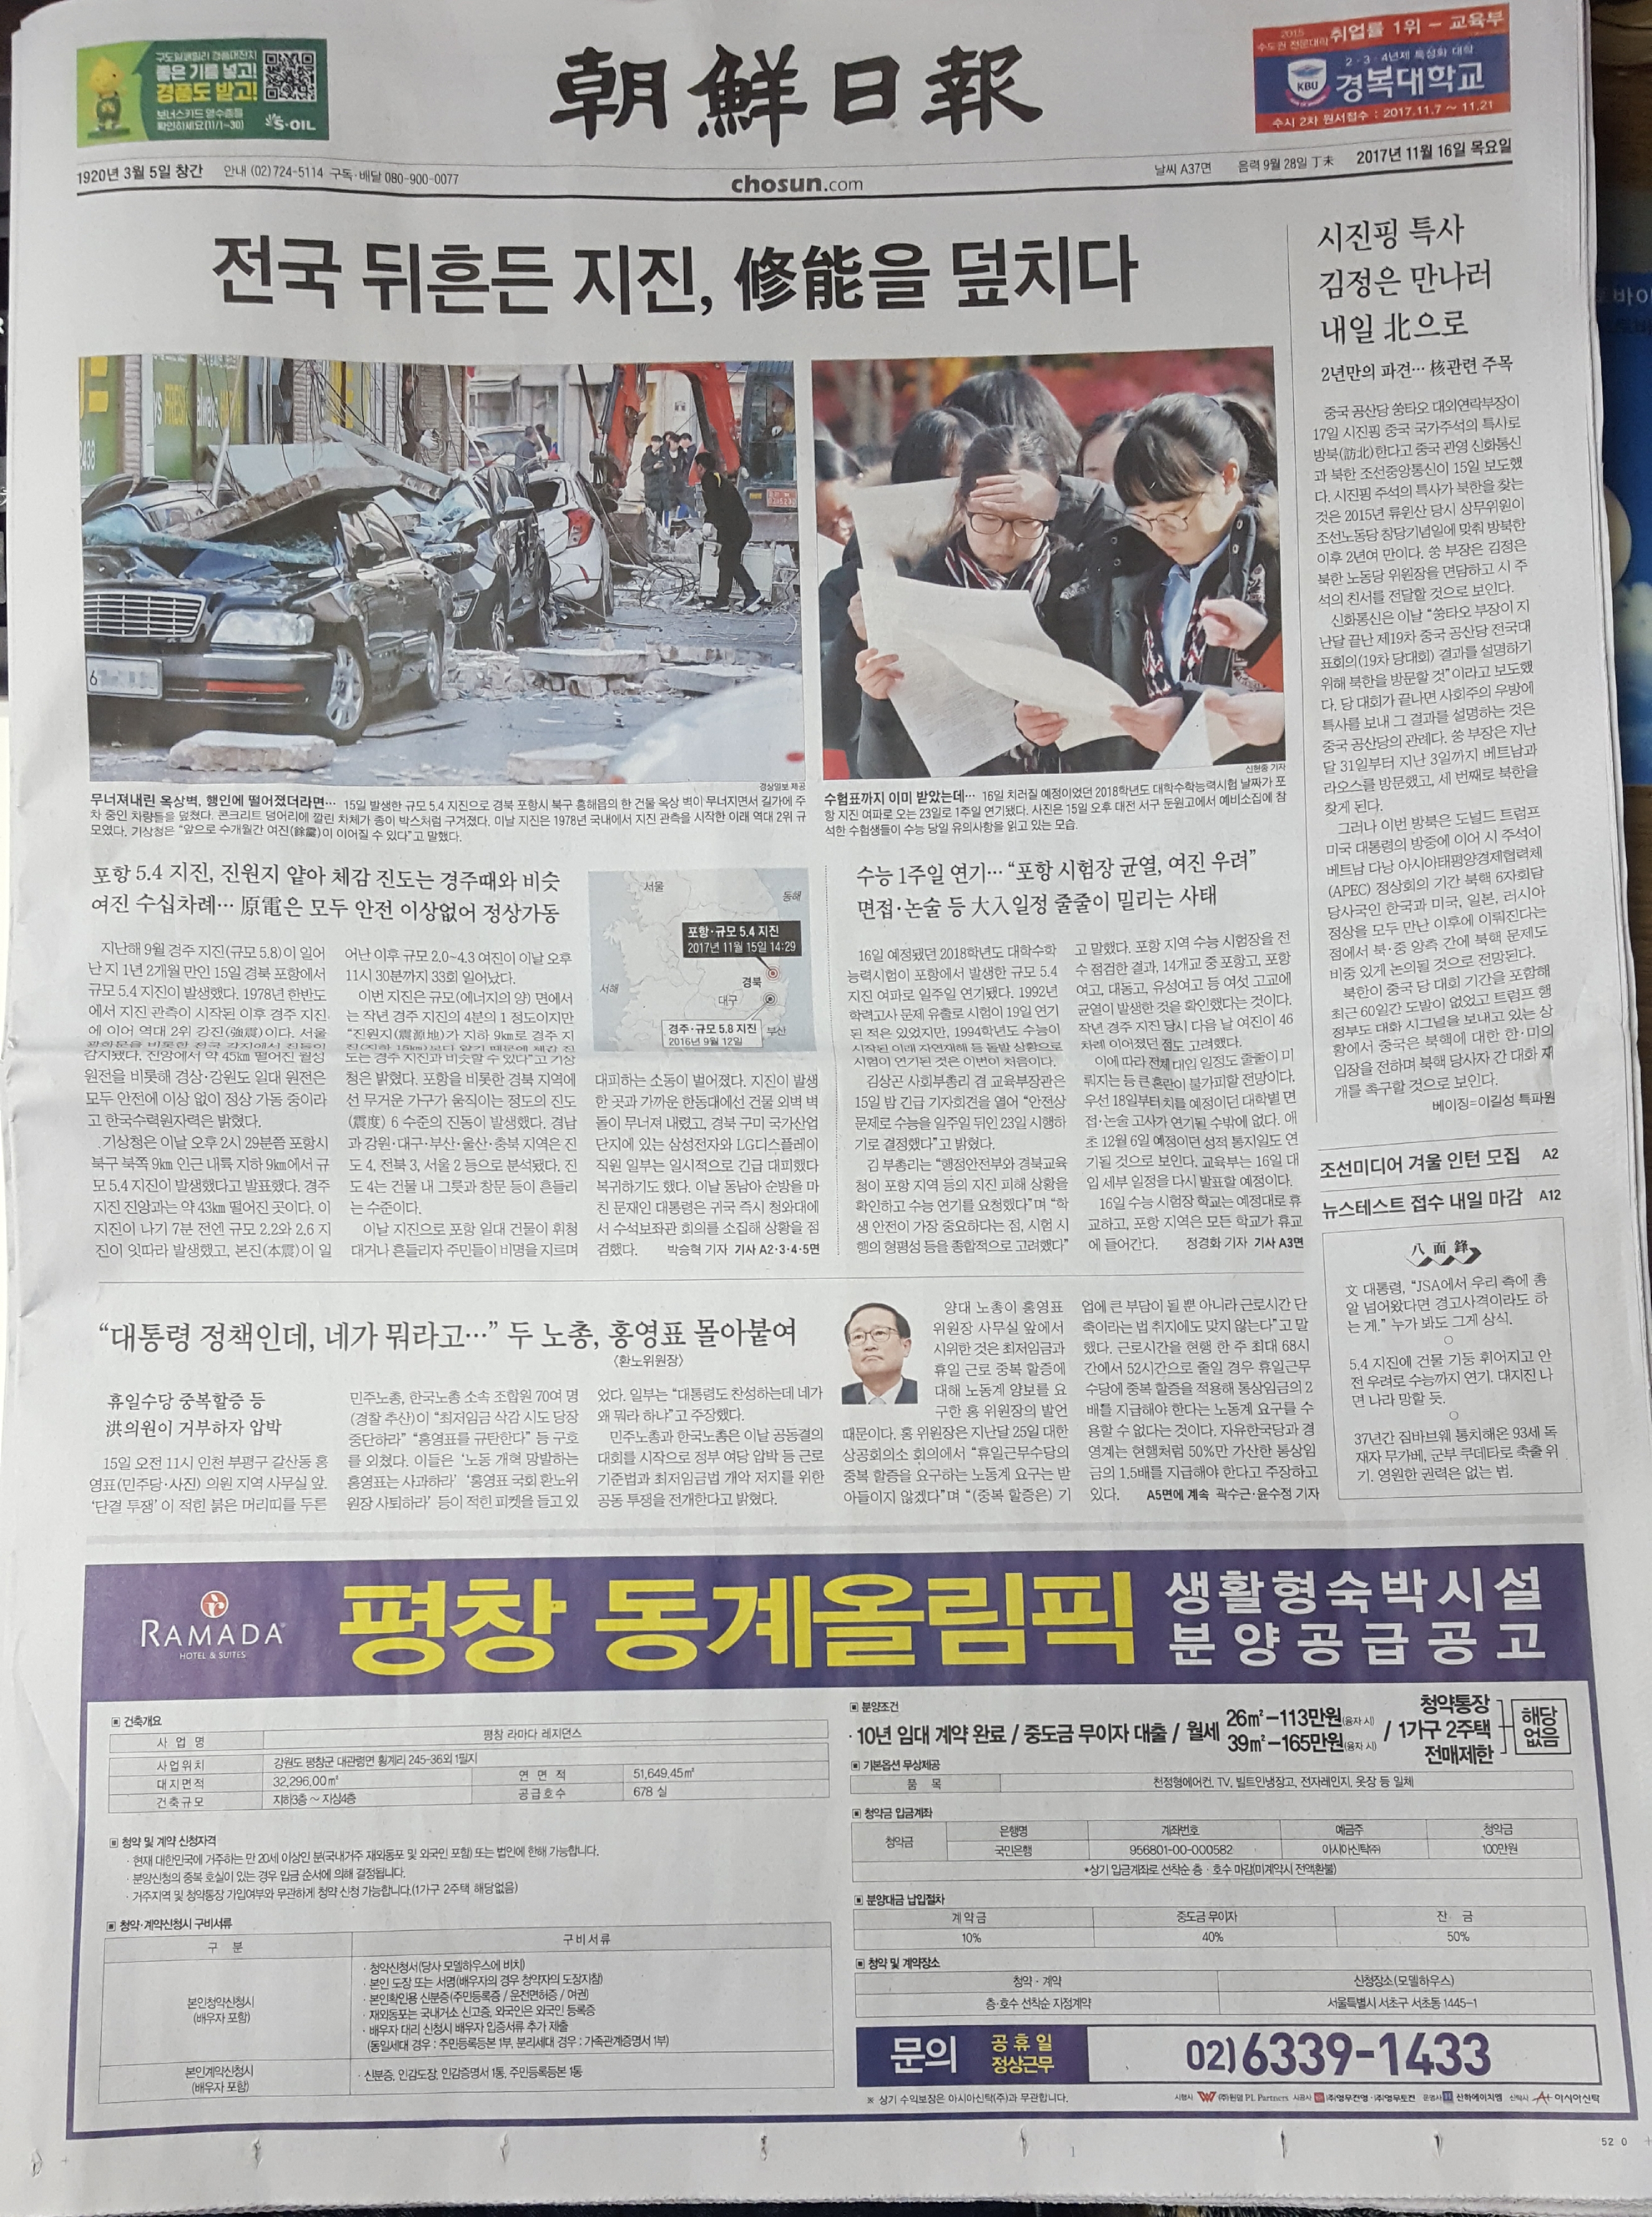 11월 16일 조선일보 A1 평창 라마다호텔 -5단통.jpg